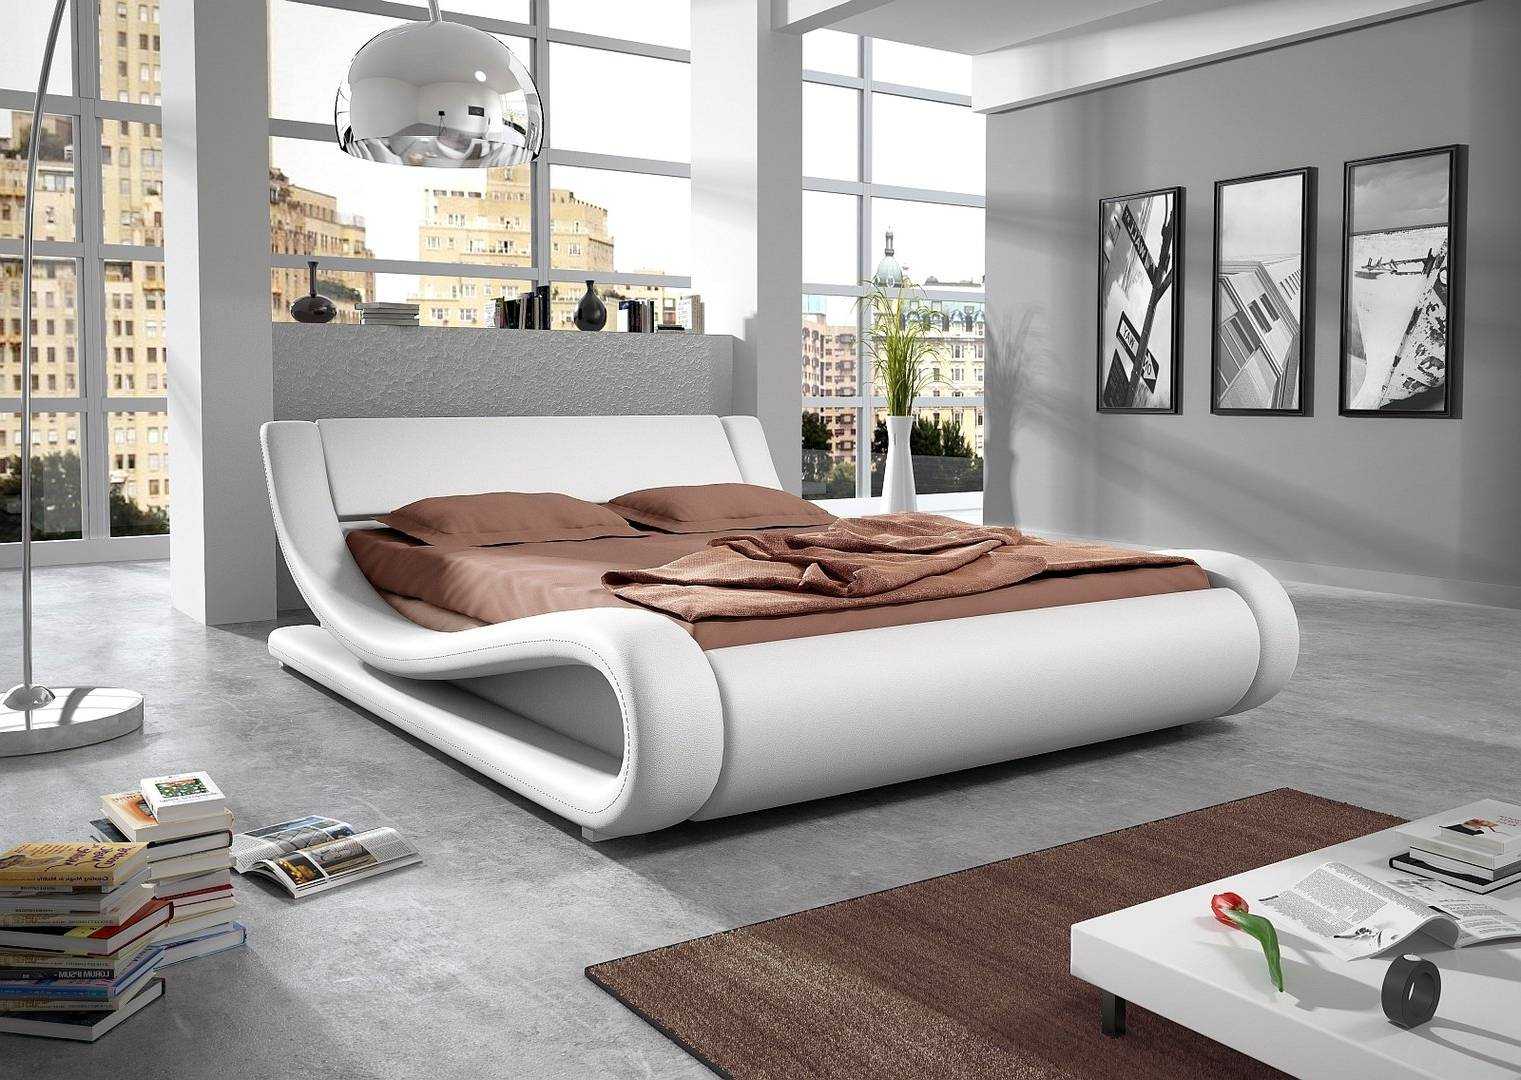 Кровать для подростка: как выбрать удобную кровать? 50 популярных моделей кроватей | экспертные руководства по выбору техники